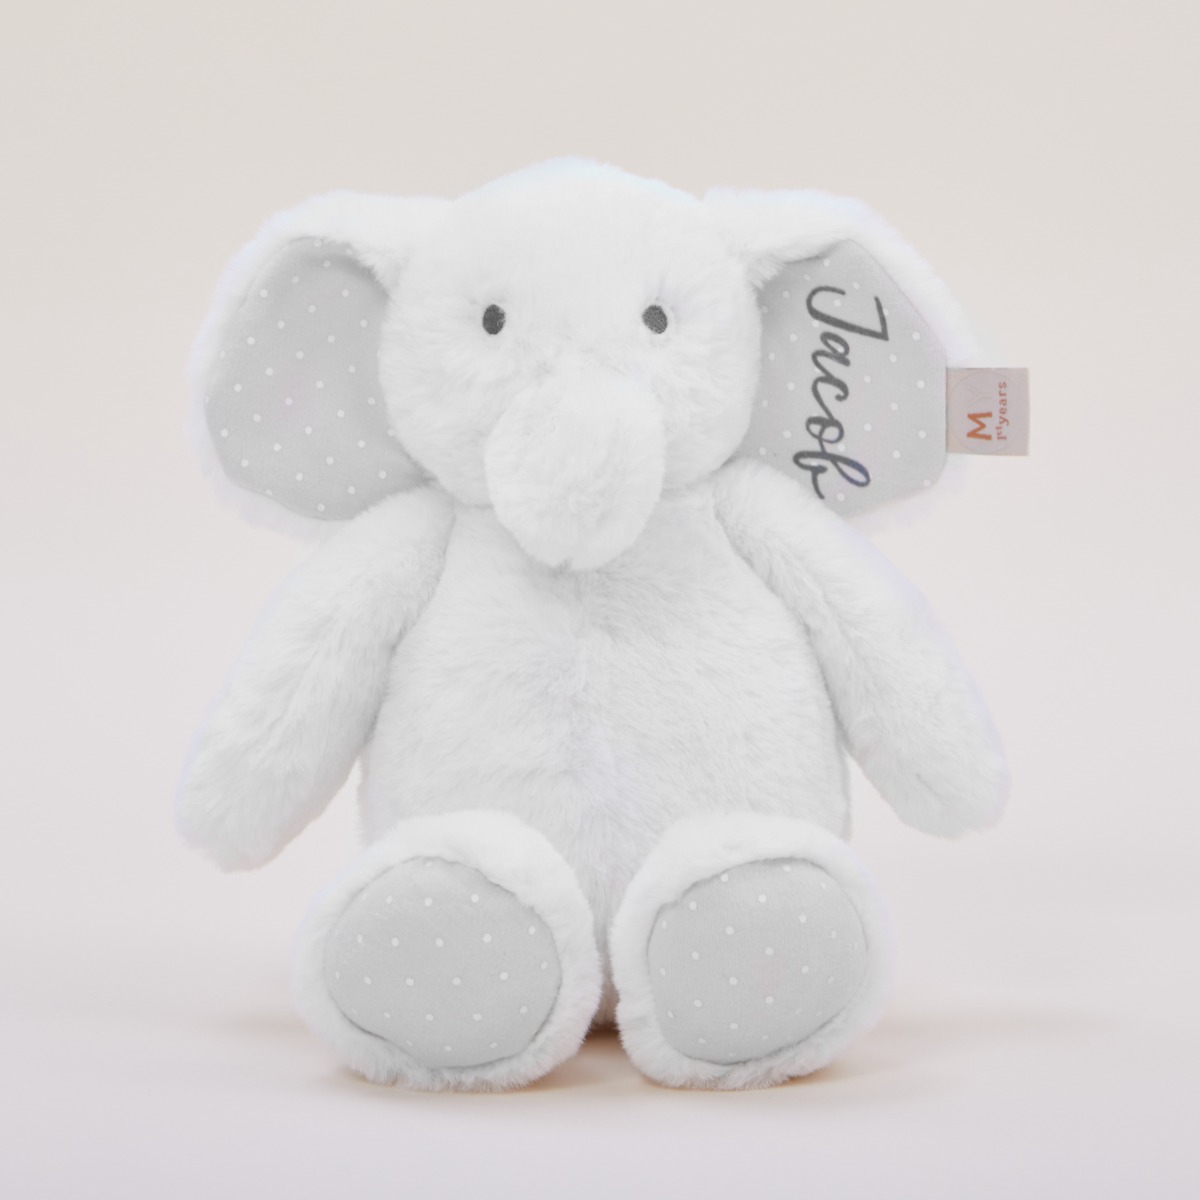 Personalised White Elephant Soft Toy